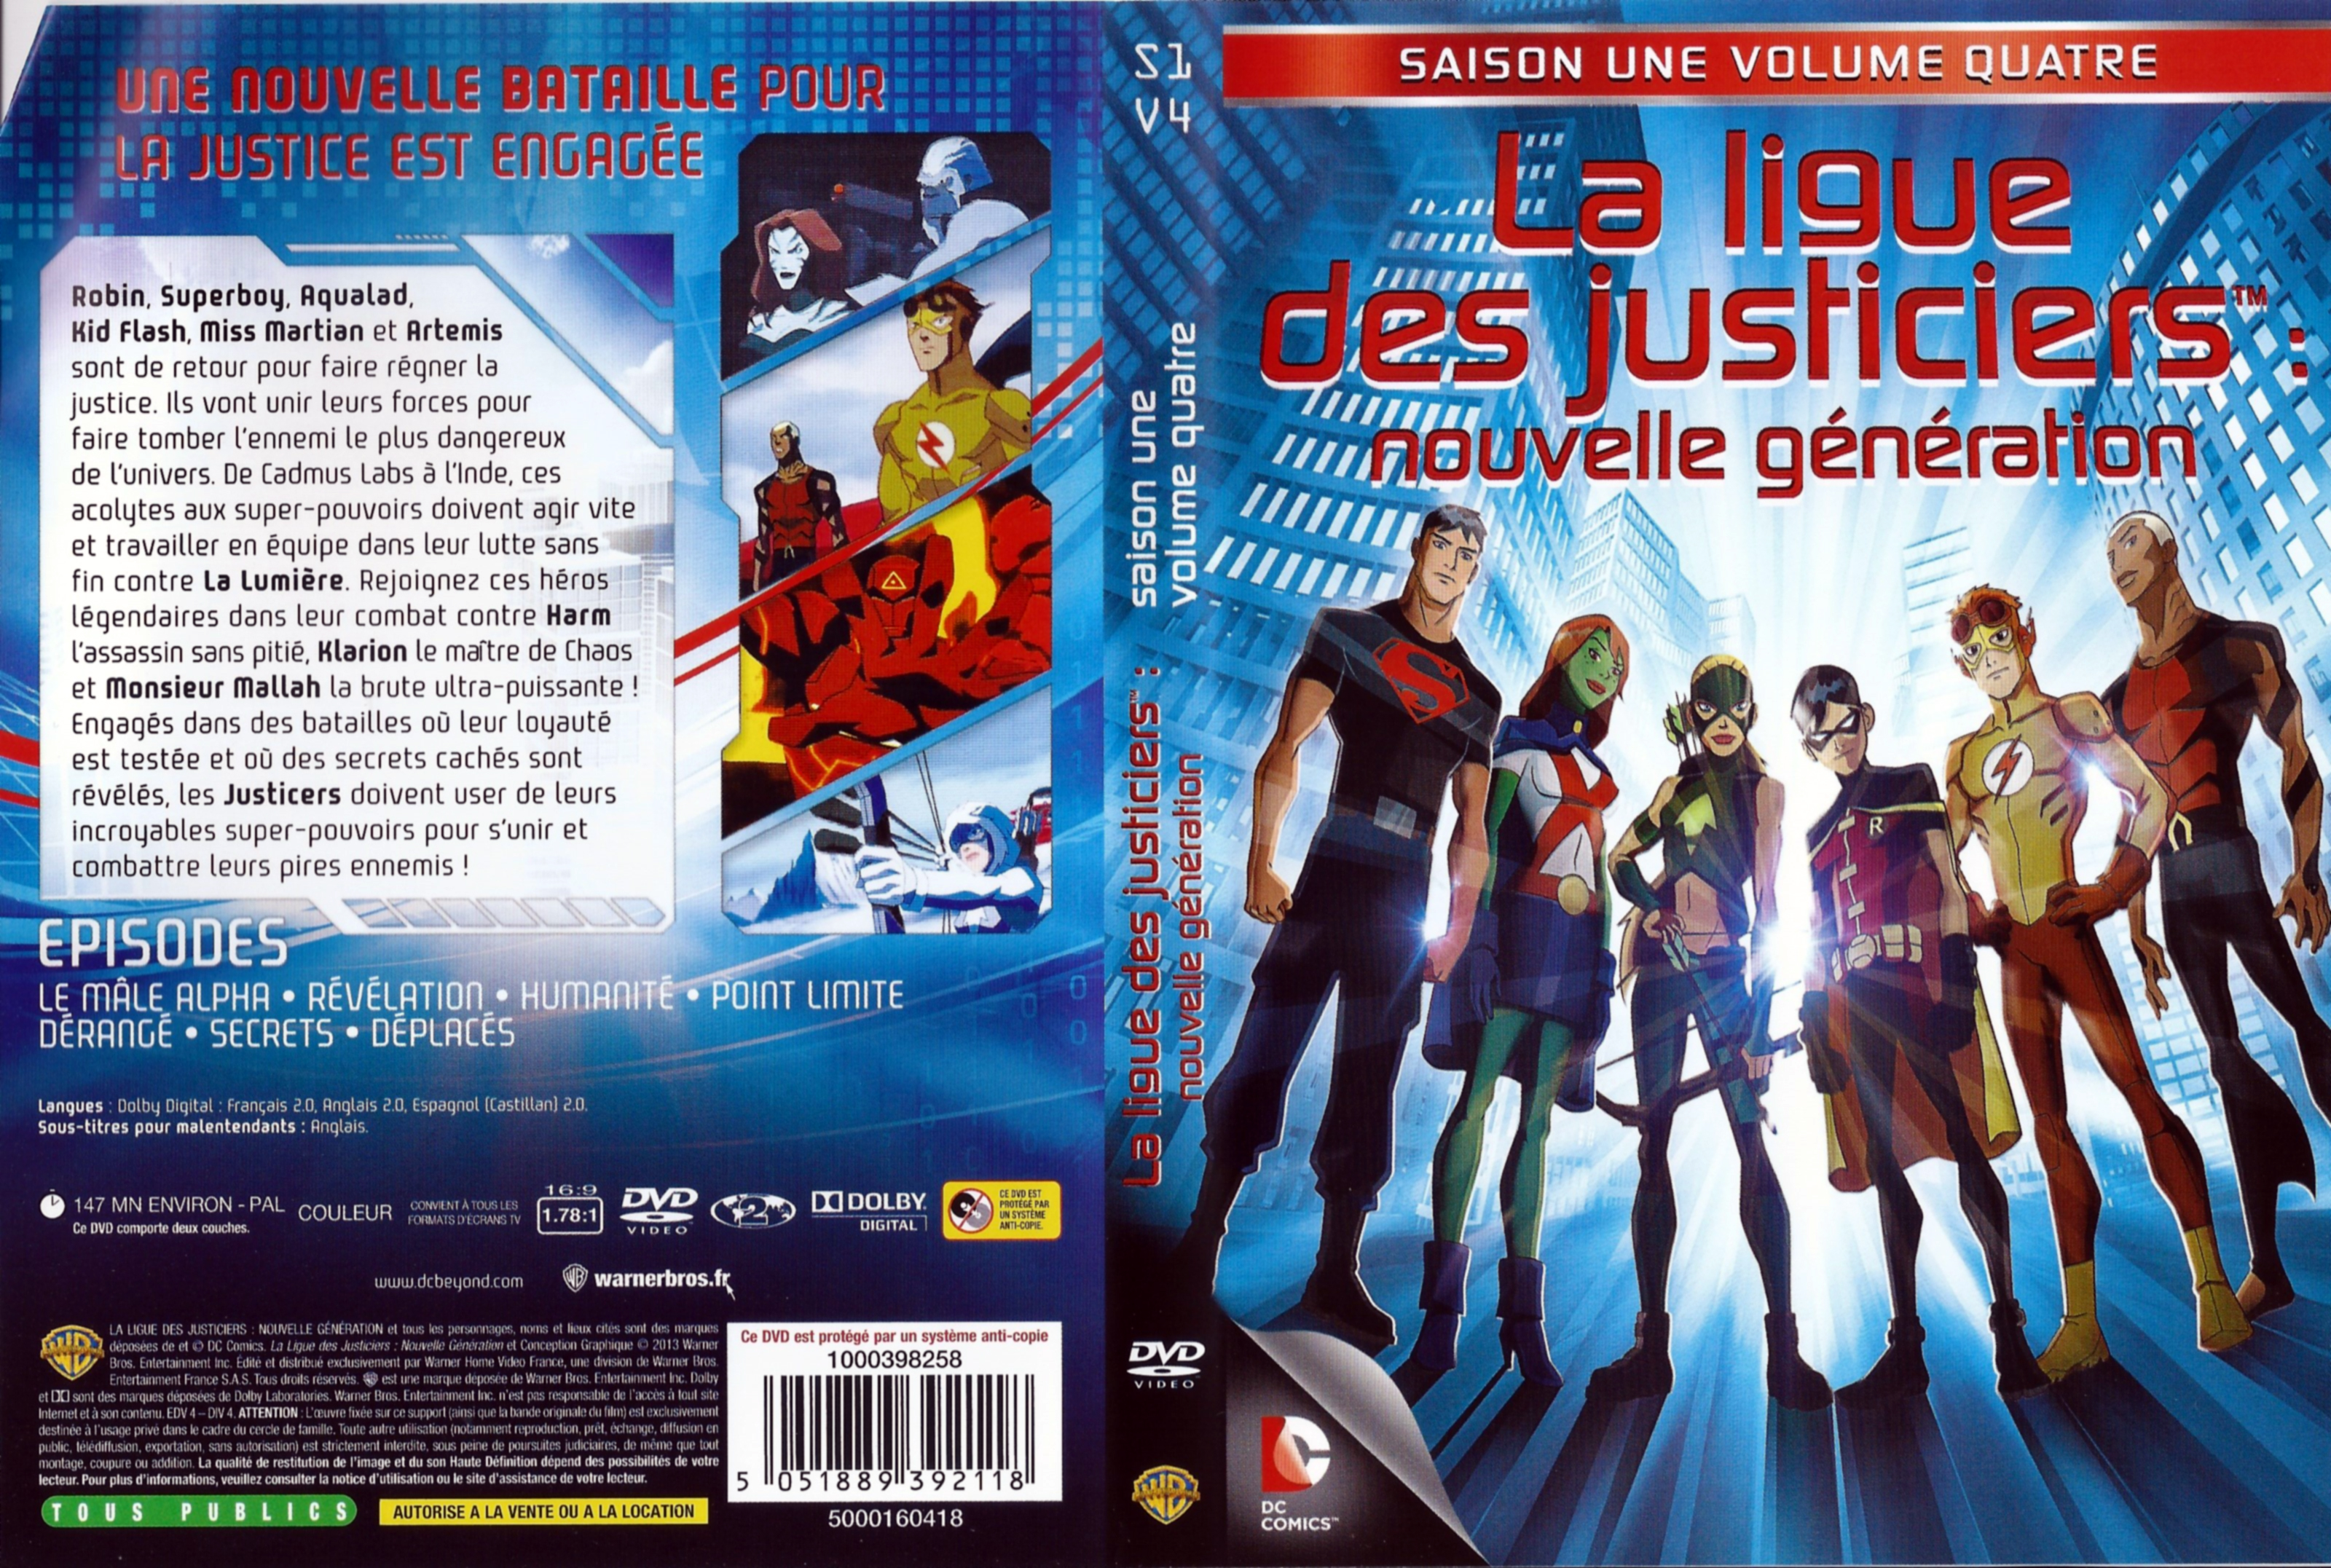 Jaquette DVD La ligue des justiciers nouvelle generation Saison 1 Vol 04